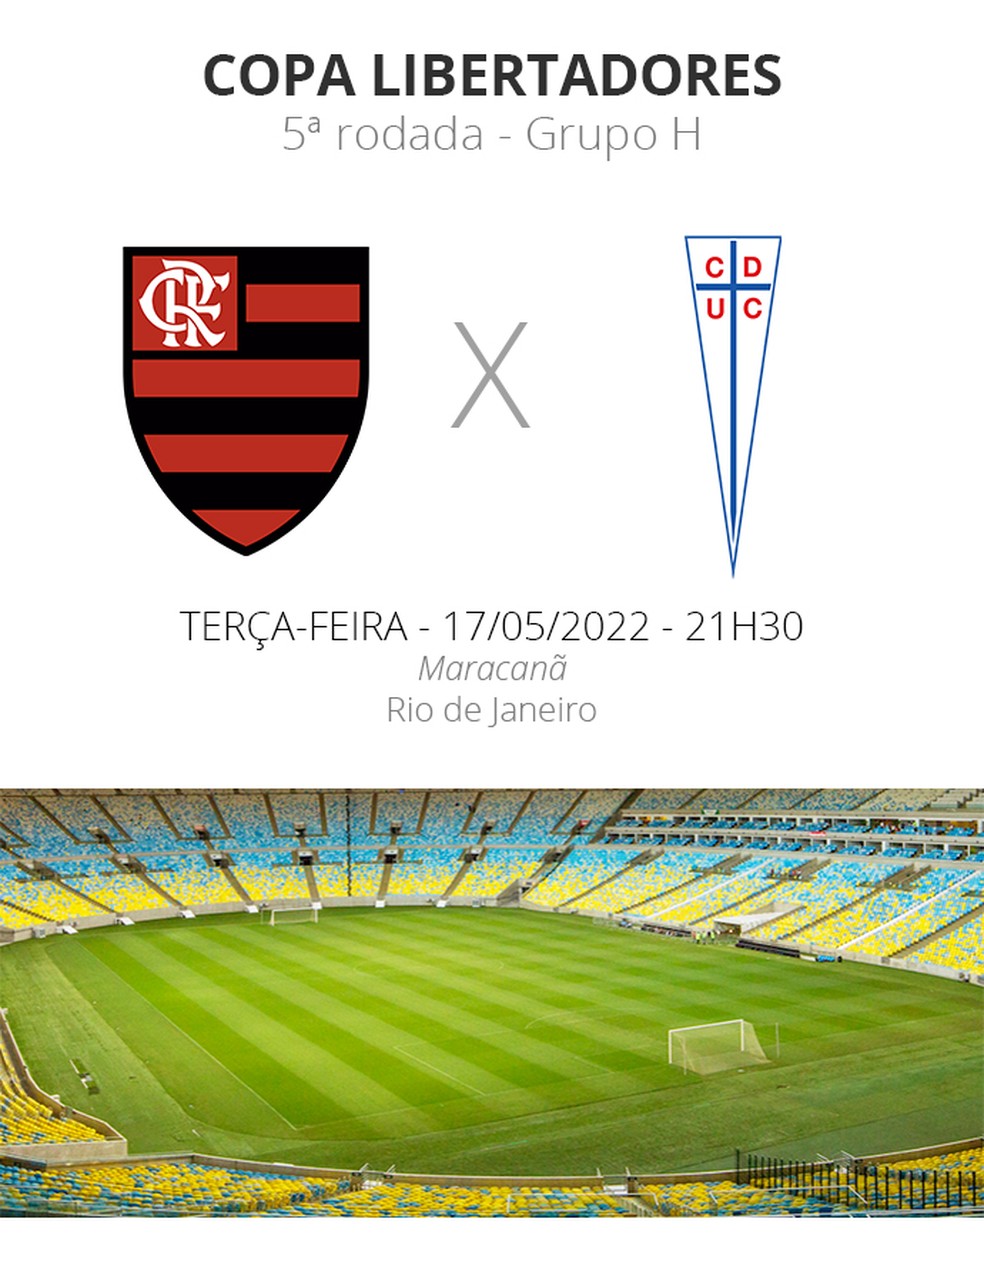 Jogo do Flamengo ao vivo: assista online gratis Universidad Católica x  Flamengo pela Libertadores